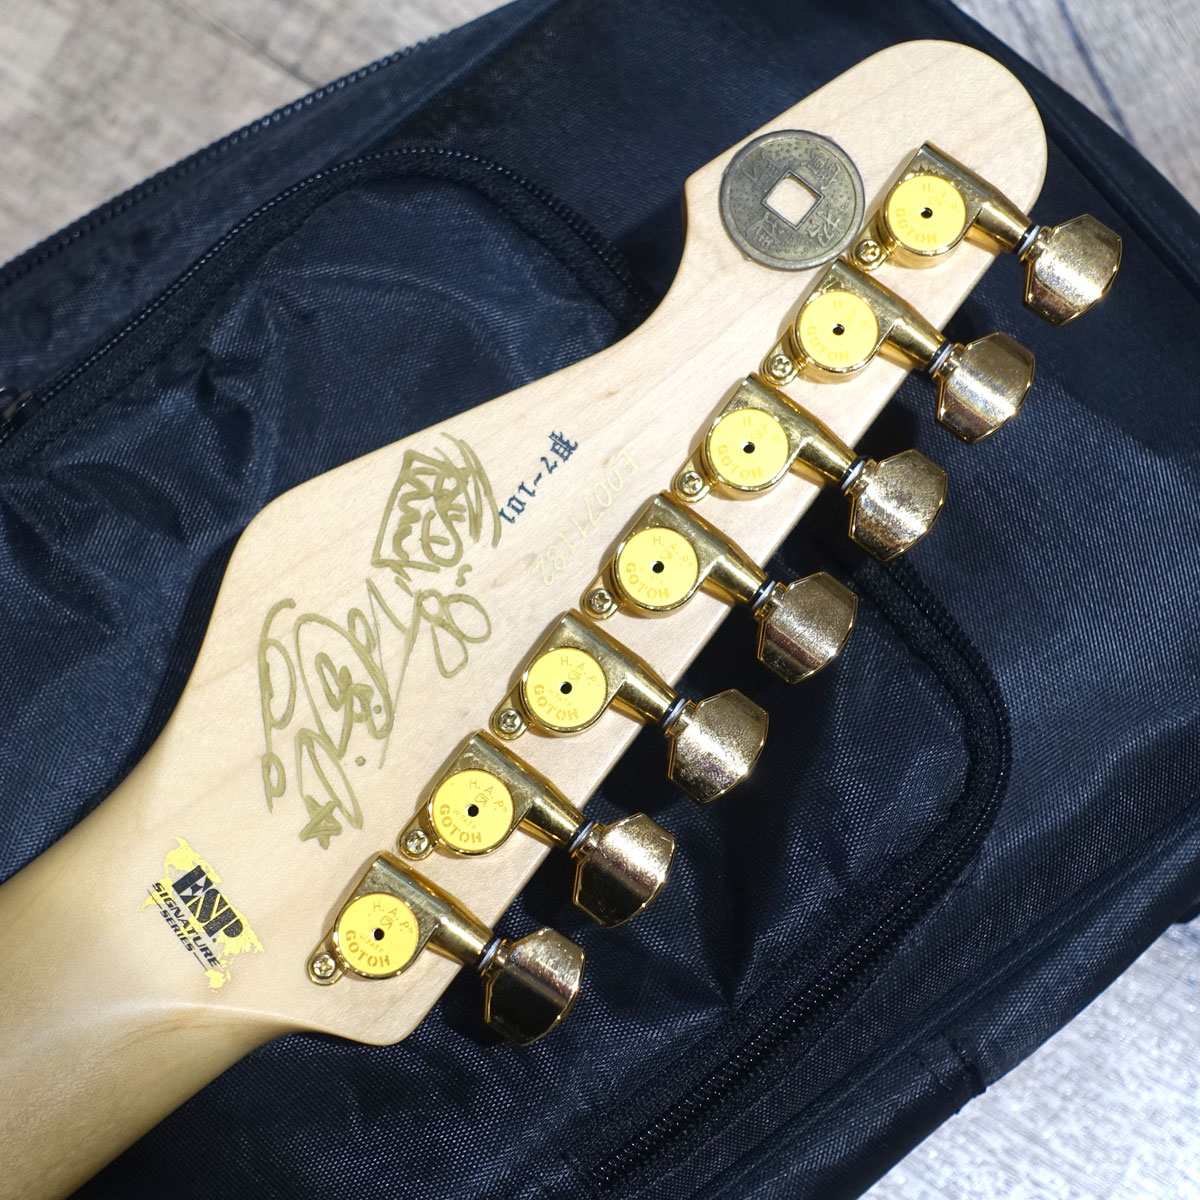 本人モデルに近づけたステッカーチューンが圧巻。ヘッド裏にサイン有り、アーム欠品、弾きキズなどありますが、演奏上のコンディションは良好です。
【中古】ESP / SNAPPER-7 Ohmura Custom Twinkle Pink【4.1kg】【S/N:E0071182】
ishibashi.co.jp/ec/product/280…
#イシバシ楽器横浜店
#ubox 
#guitar 
#ESP